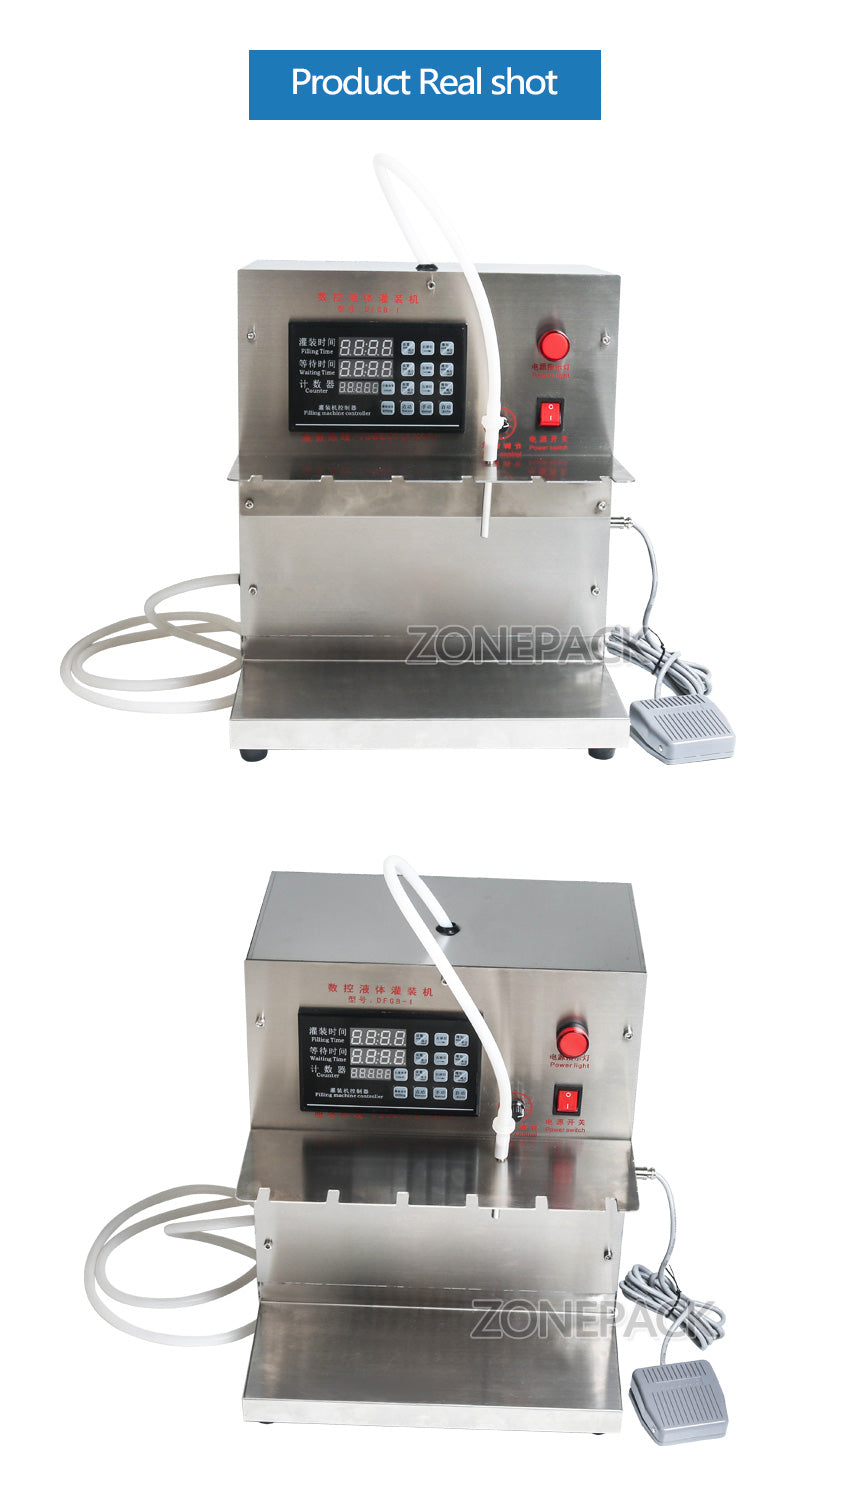 ZONEPACK DFGB Компактная точная машина для розлива жидкостей с числовым программным управлением Машина для розлива напитков с цифровым управлением